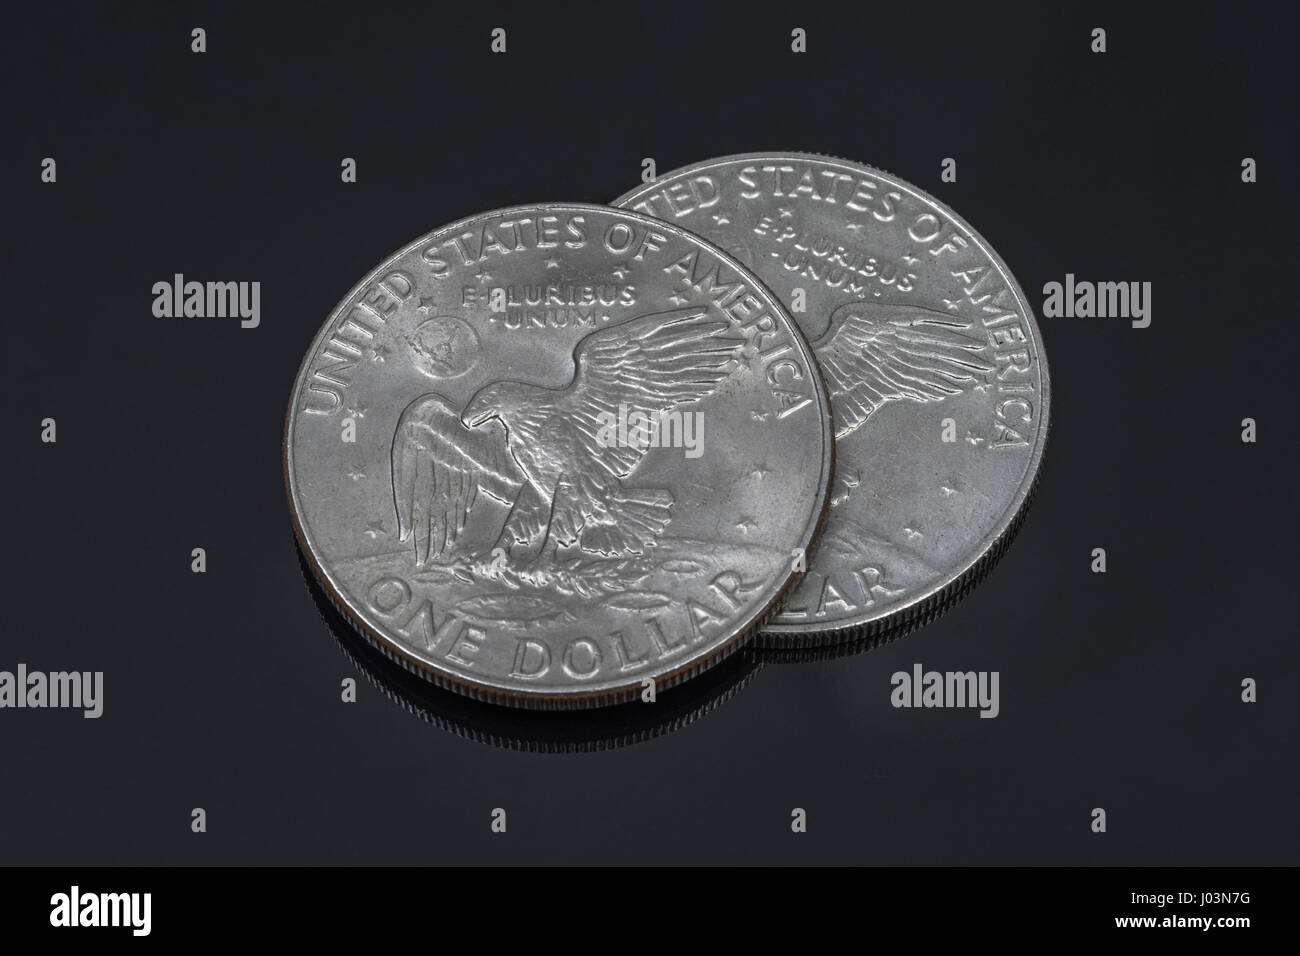 USA 1 Dollar / $1 Dollar Münze auf dunklem Hintergrund - Metapher für den  Dollar / US-Dollar/Dollar-Wechselkurs / Wand Straße / financial Markets  Stockfotografie - Alamy